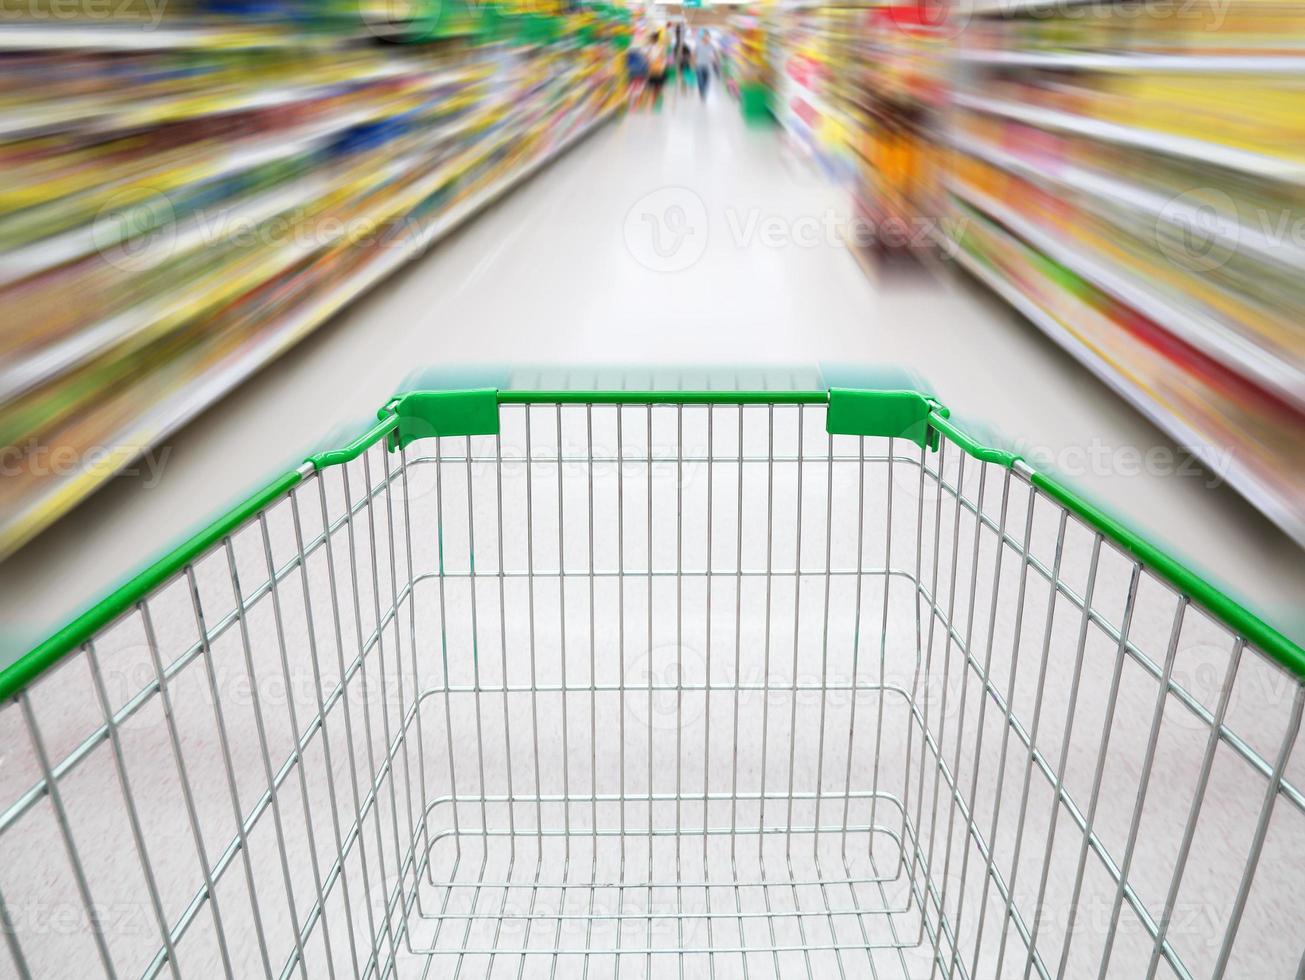 corredor do supermercado com carrinho de compras verde vazio foto